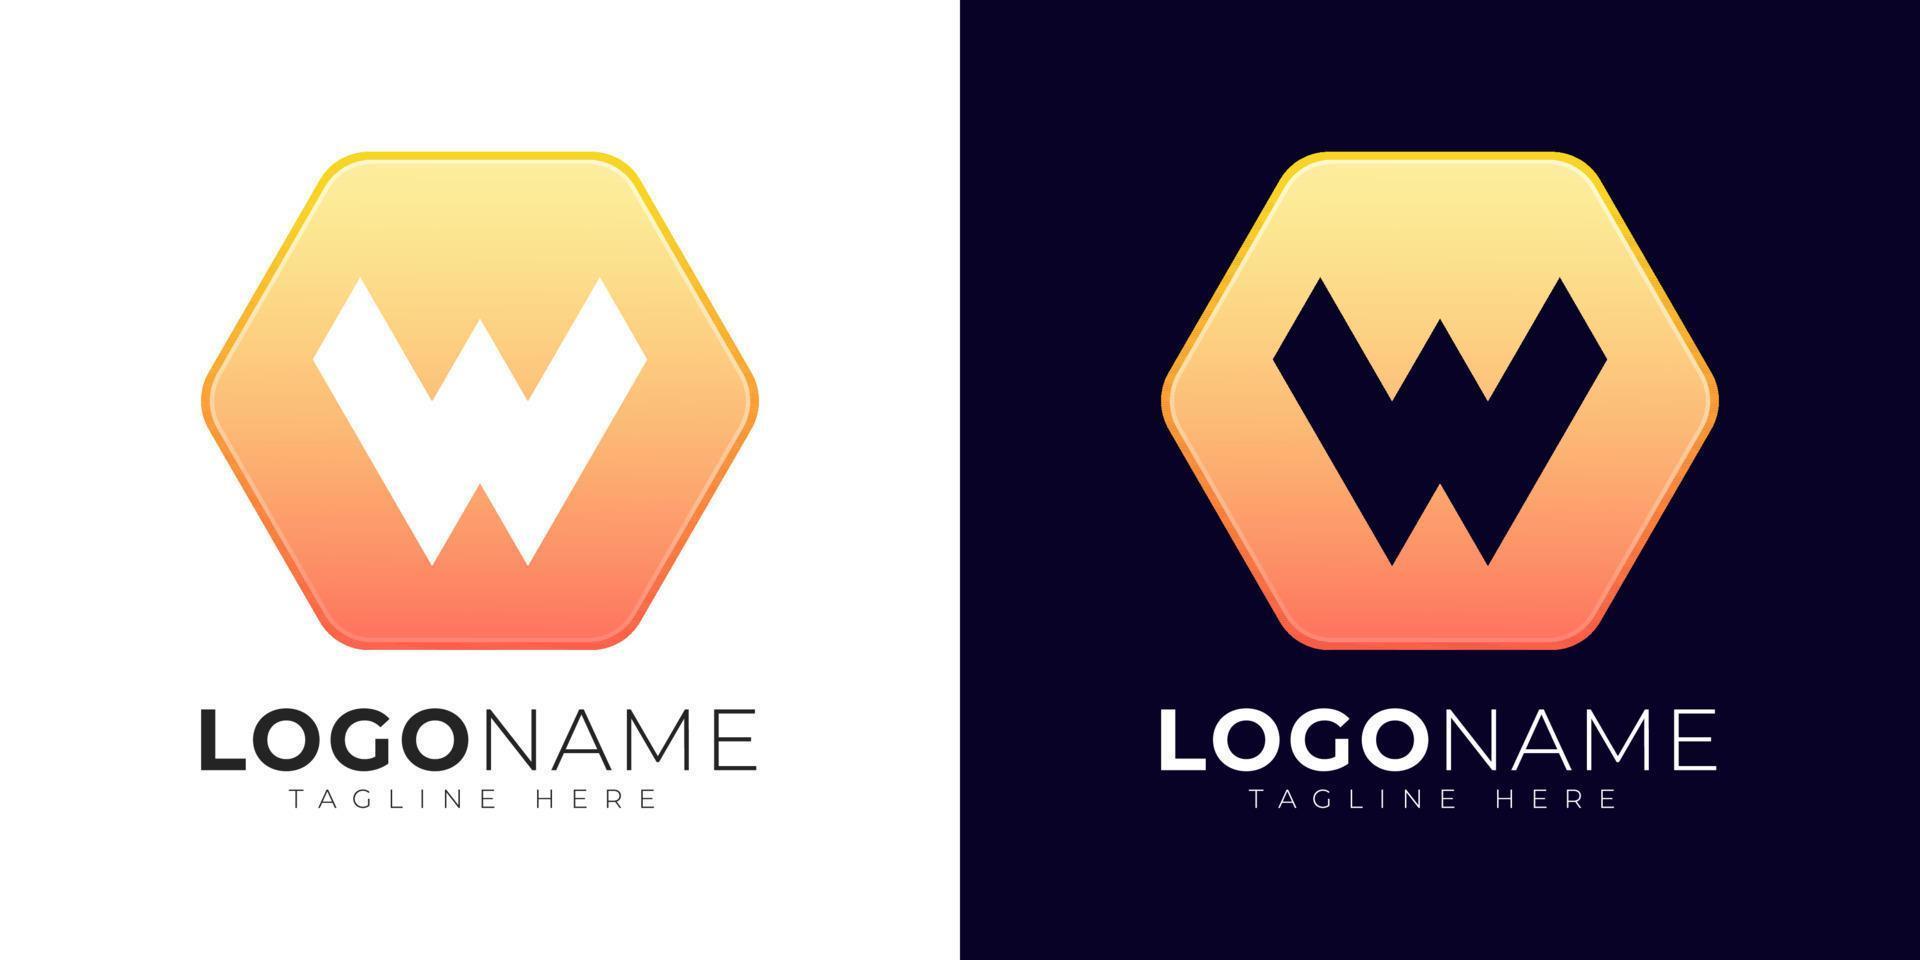 modelo de design de vetor de logotipo de letra w. ícone moderno do logotipo da letra w com forma de geometria colorida.